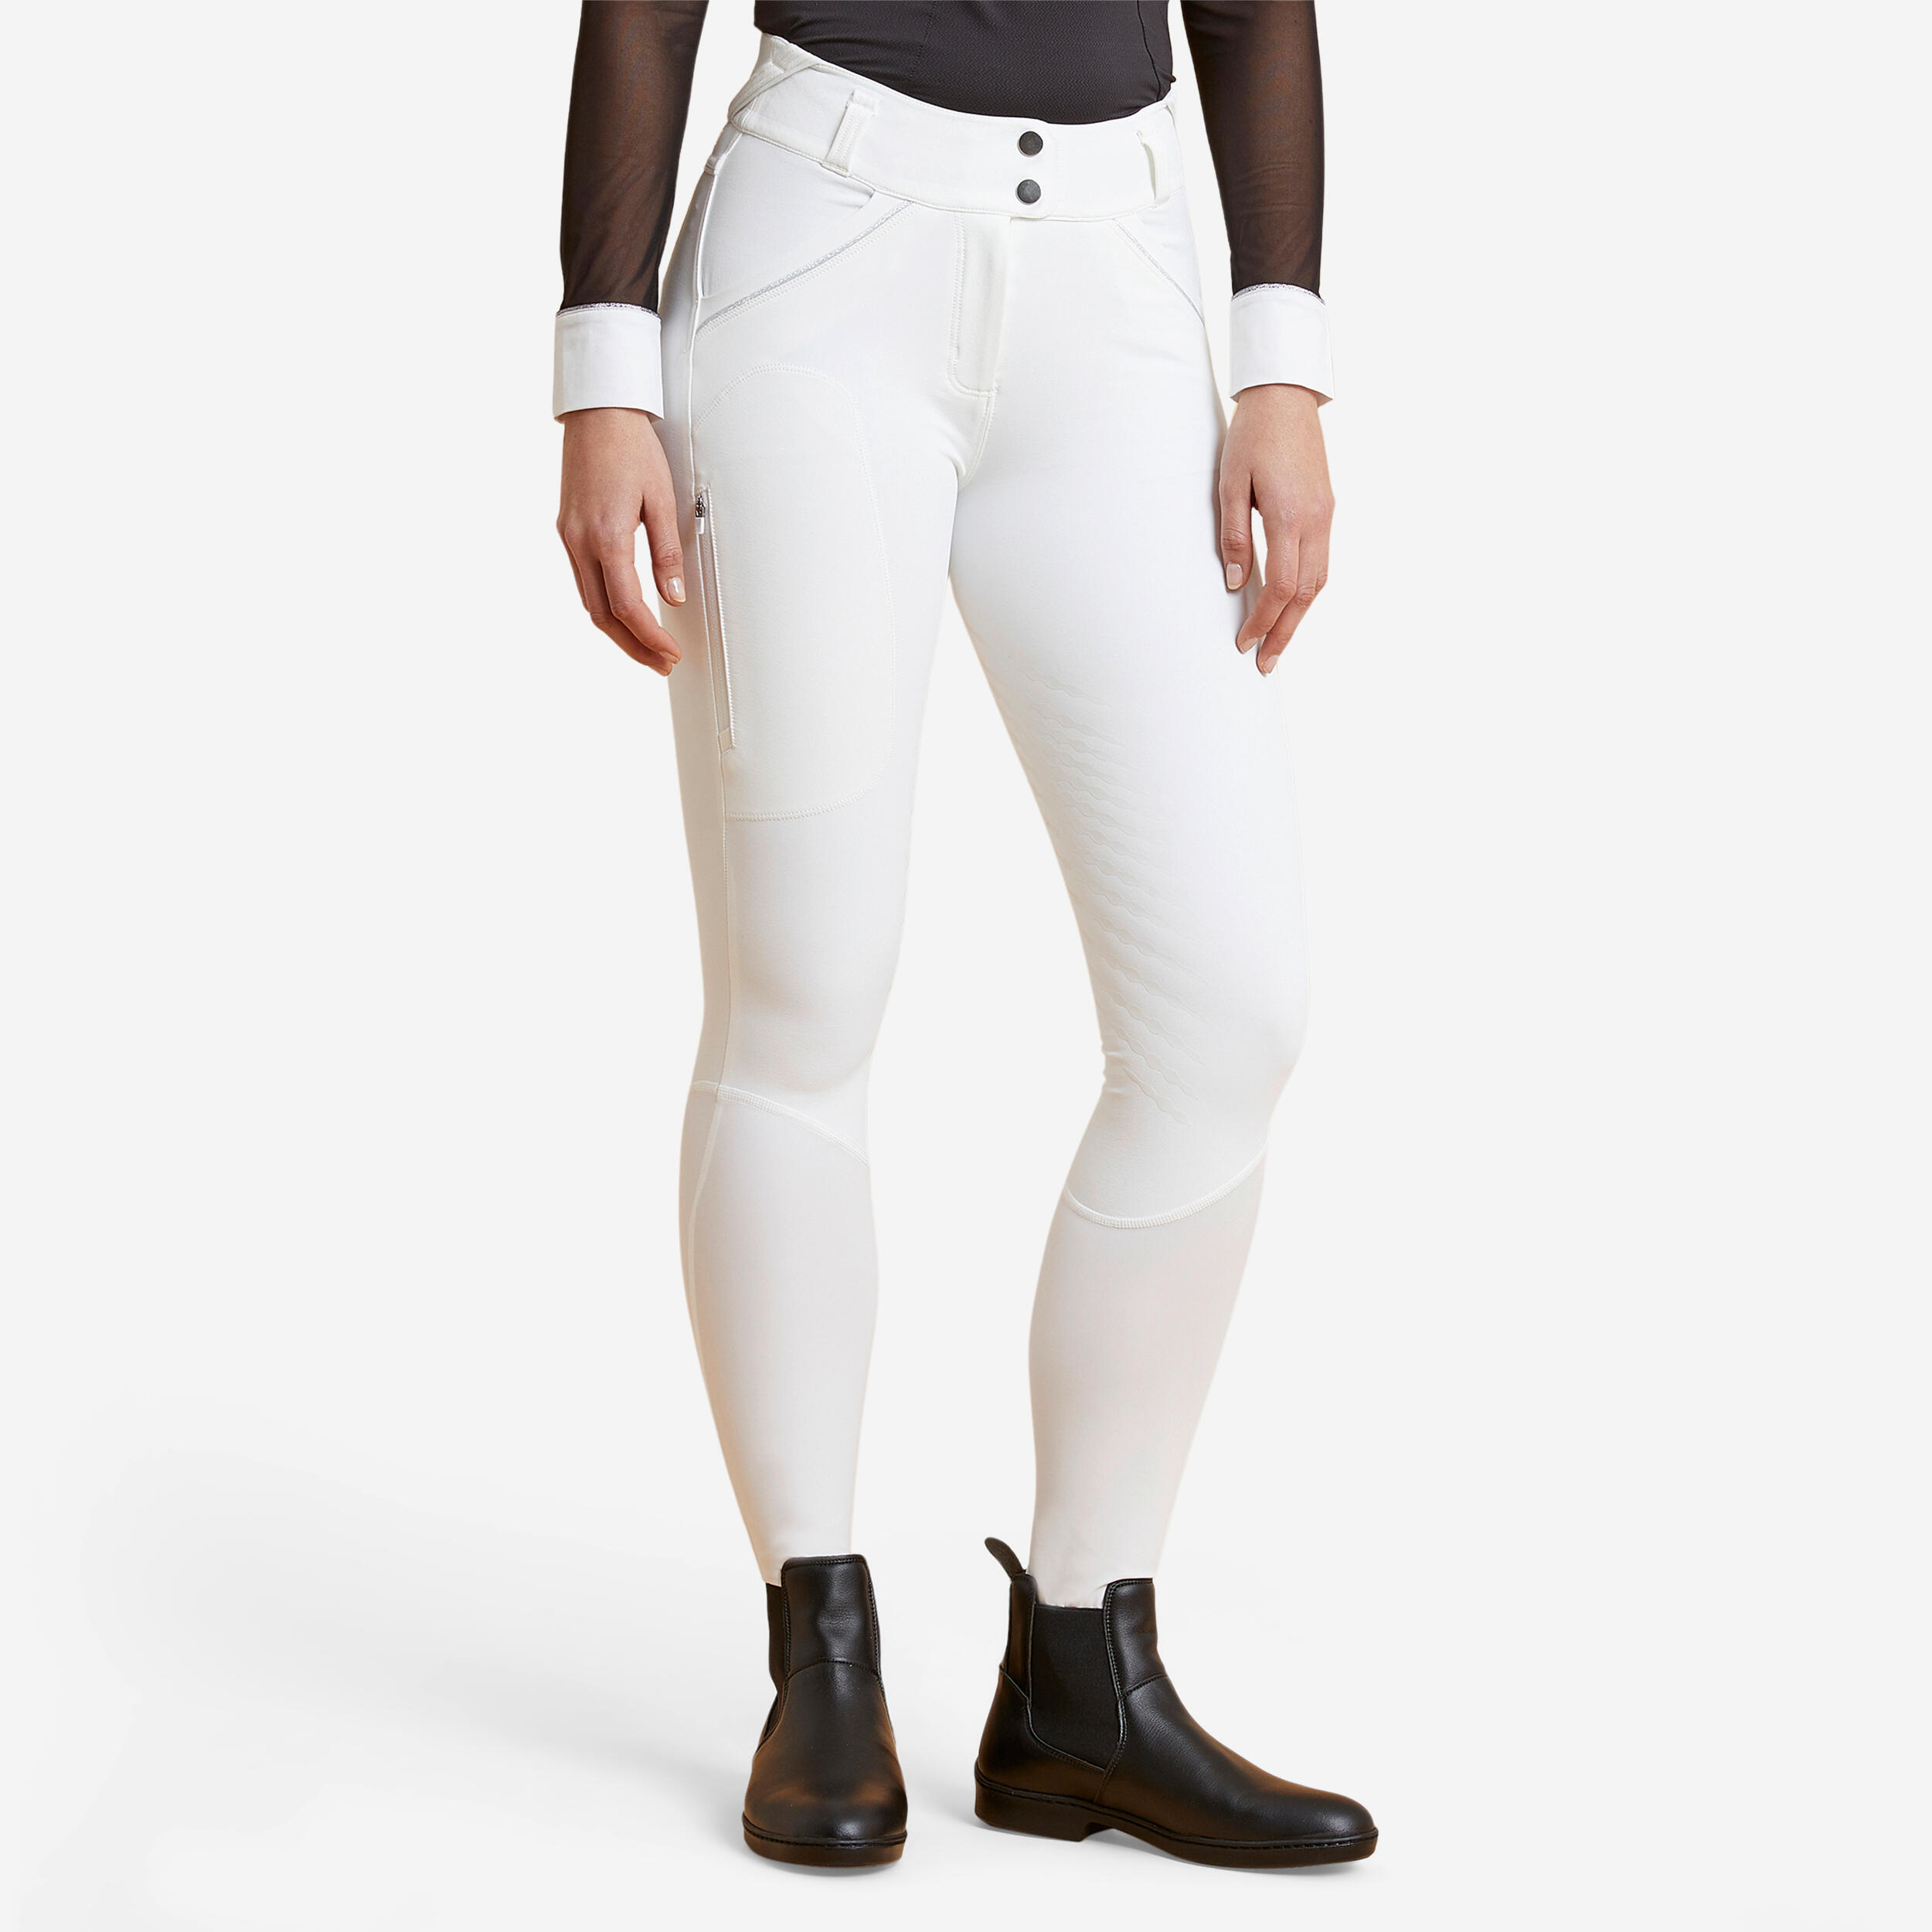 pantalon de concours équitation classic grip femme - 900 blanc - fouganza